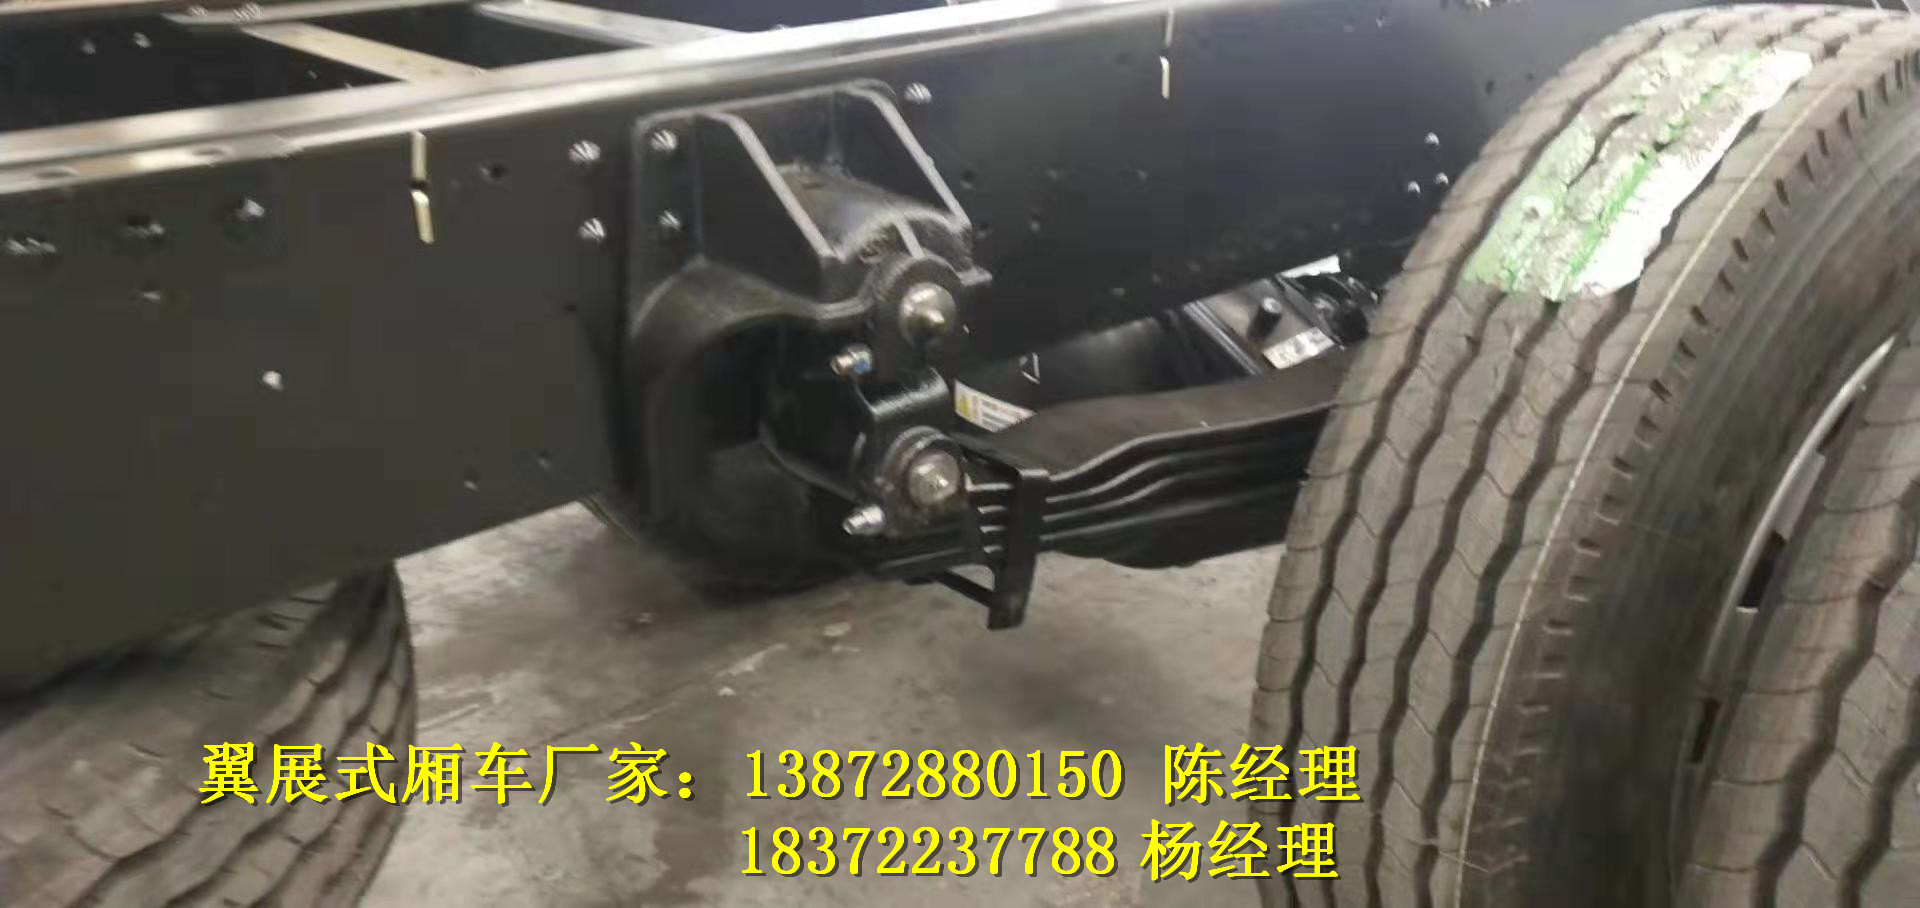 铁门关东风10吨腐蚀品运输车图片介绍危险品车